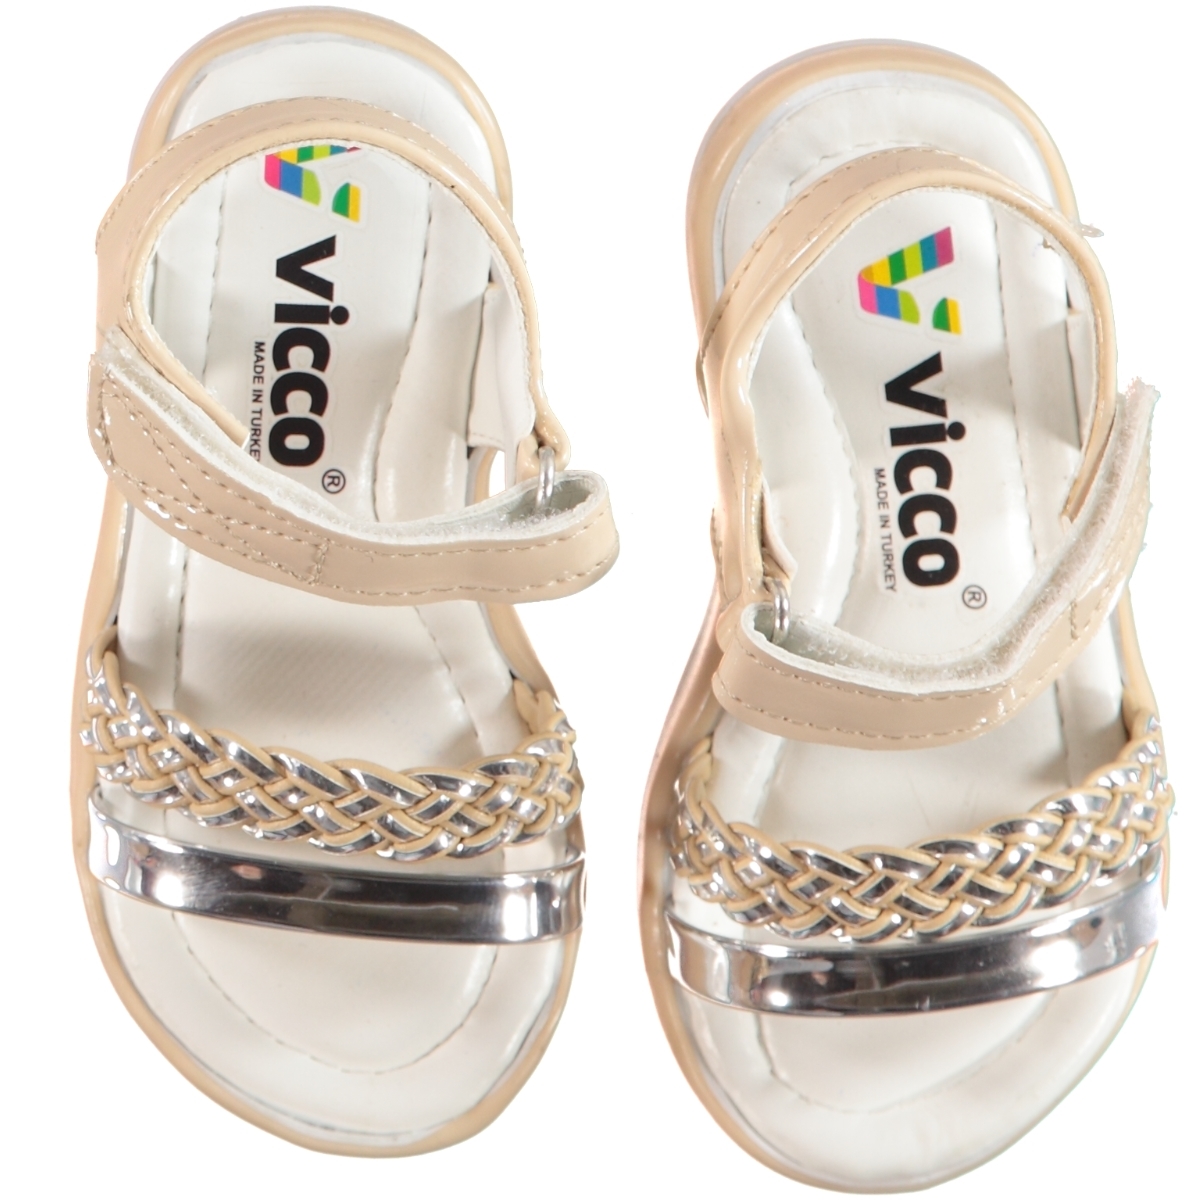 Vicco Kız Bebek Sandalet Ayakkabı 21-25 Numara Pudra Pembe